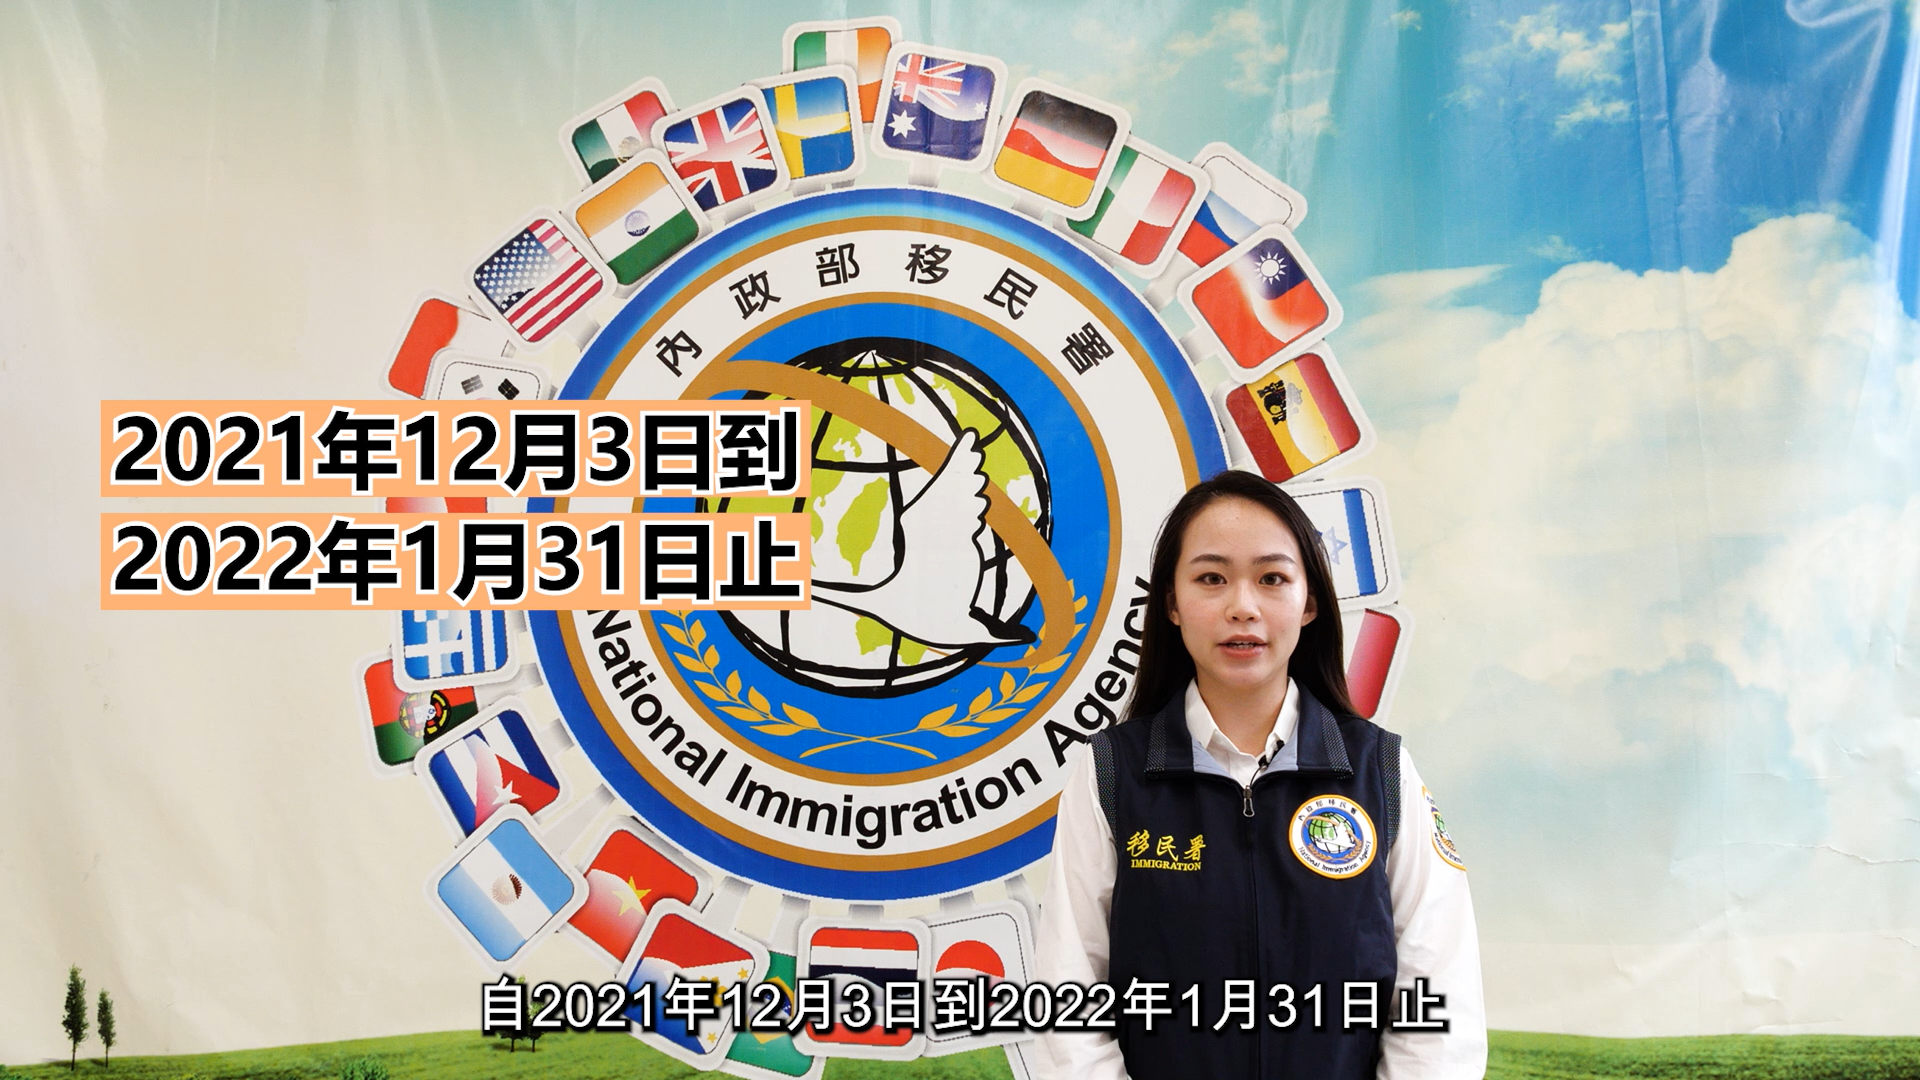 Departemen Imigrasi mempromosikan "Program Vaksinasi Aman" dalam berbagai bahasa. Sumber: Departemen Imigrasi